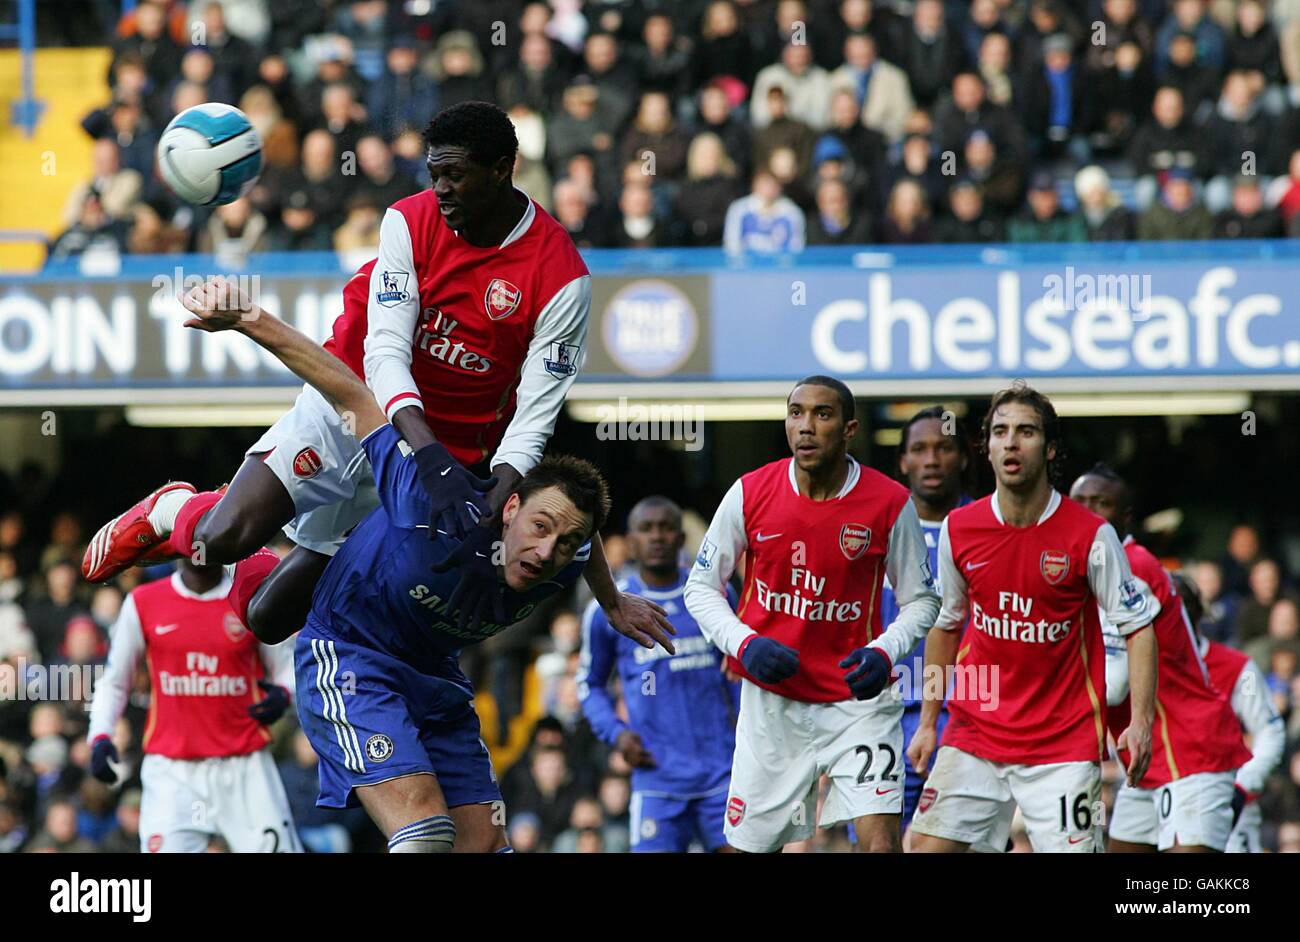 Fußball - Barclays Premier League - Chelsea / Arsenal - Stamford Bridge. Emmanuel Adebayor von Arsenal klettert über den Rücken von John Terry aus Chelsea, um den Ball zu gewinnen Stockfoto